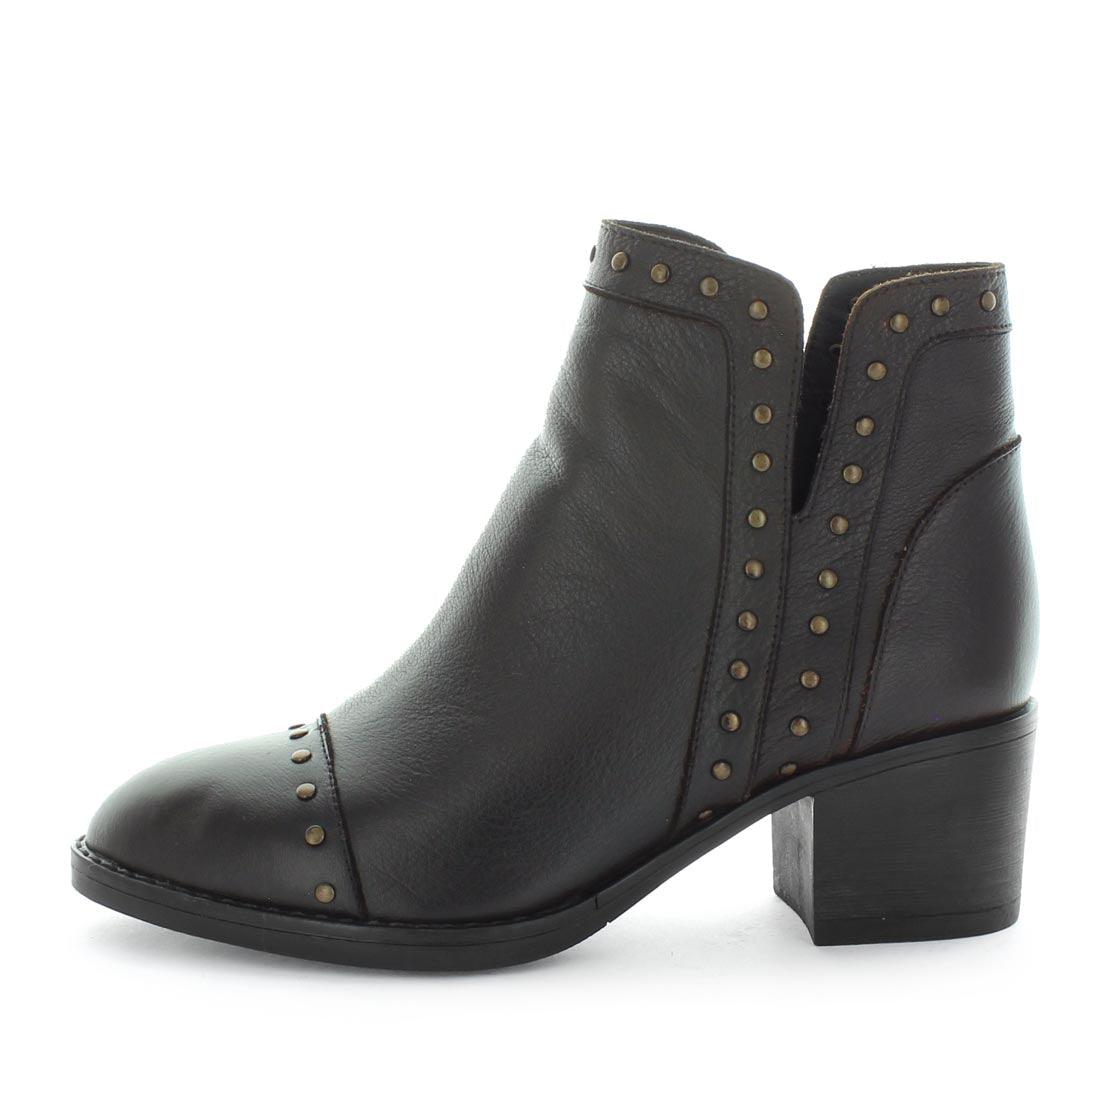 HENDRIX by ZOLA - iShoes - Sale, Sale: Women's Sale, Women's Shoes: Boots, Women's Shoes: European - FOOTWEAR-FOOTWEAR